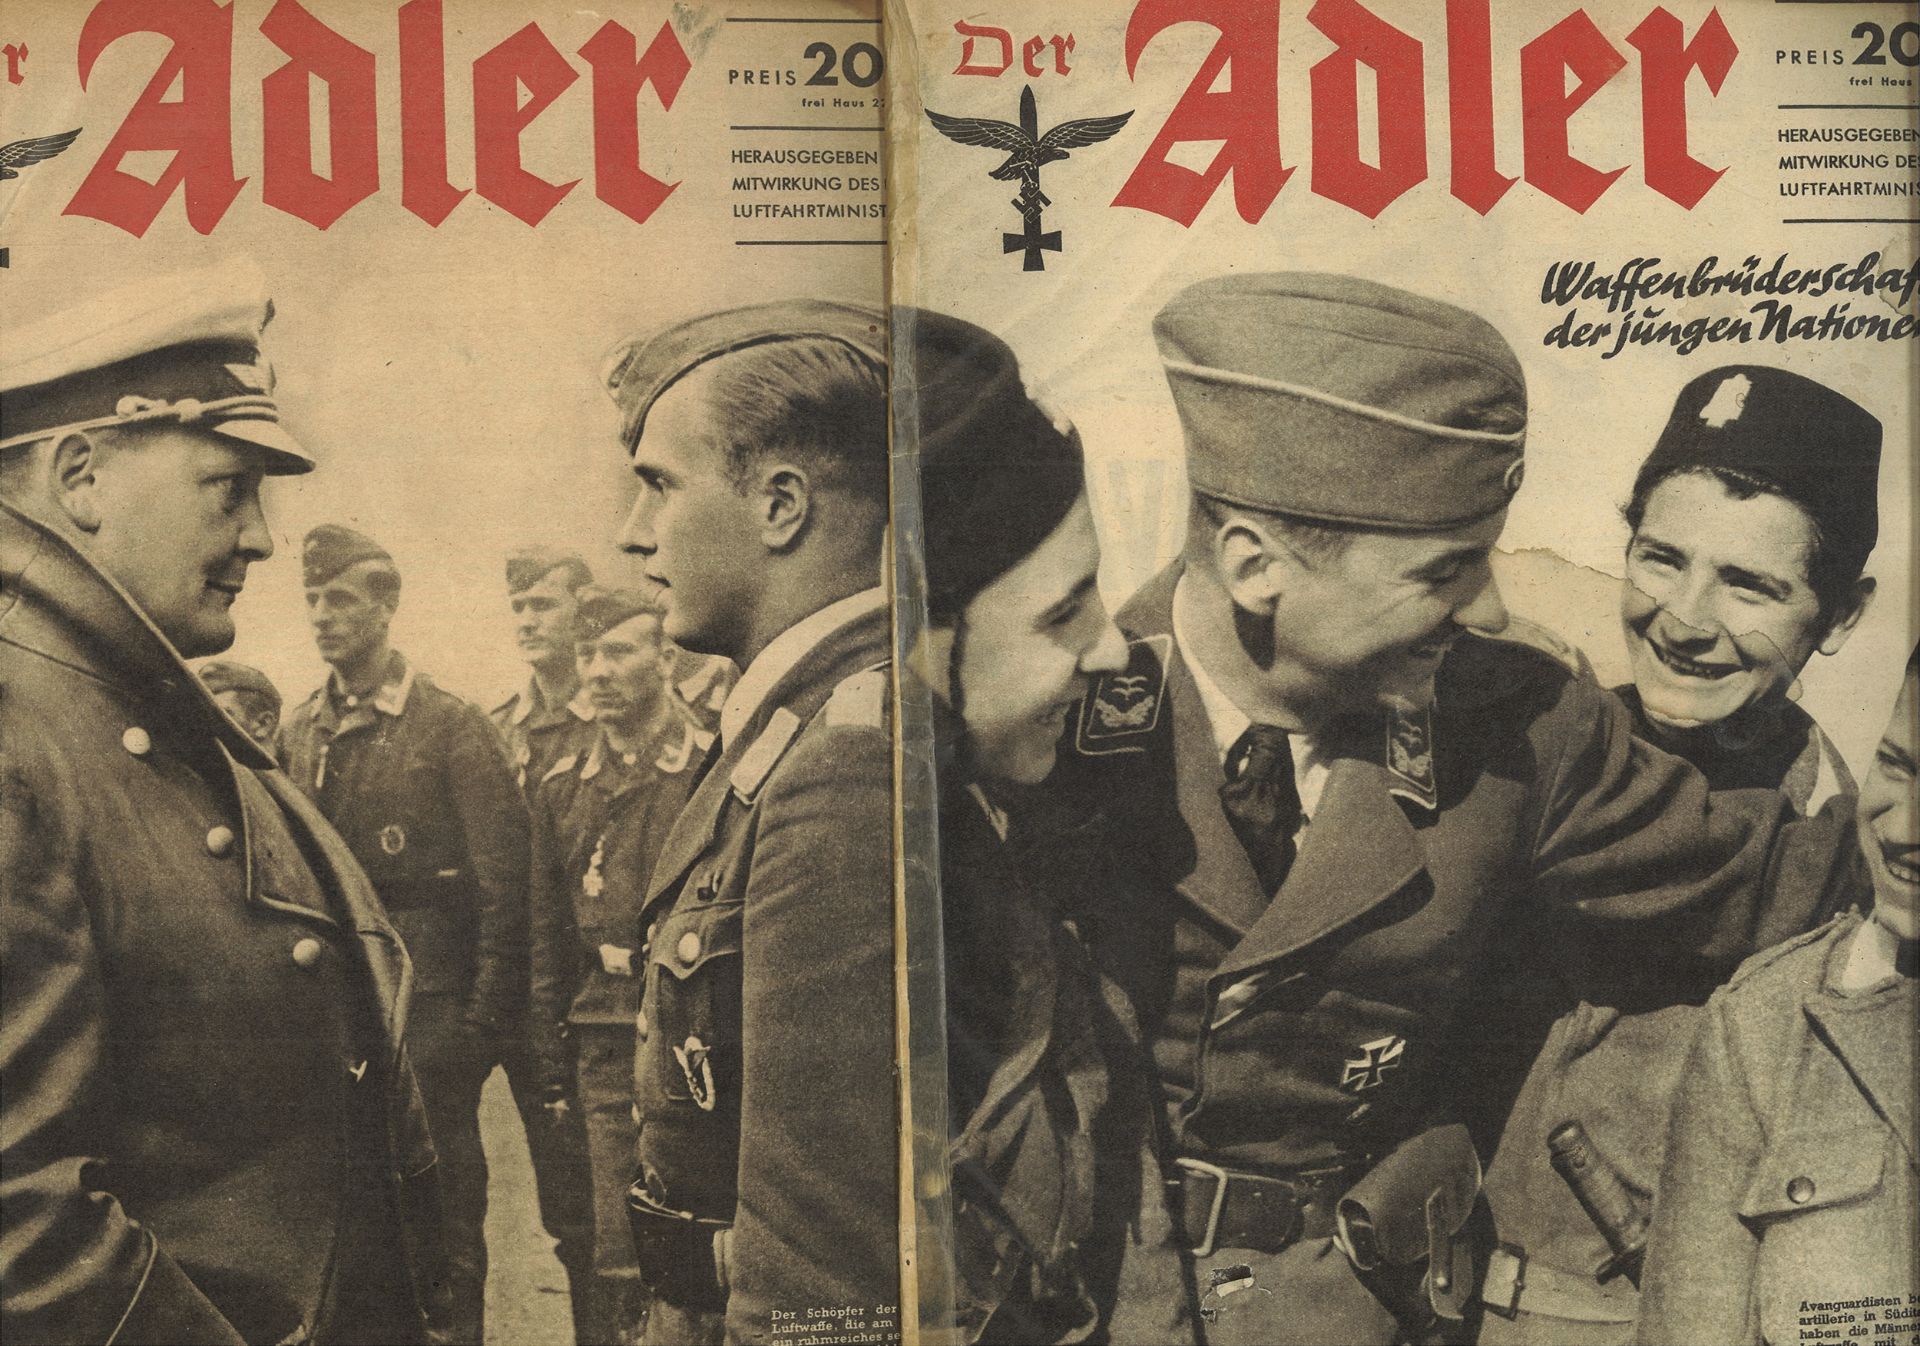 Der Adler Heft 4 / Berlin 18. Februar 1941 und Heft 5 / Berlin 4. März 1941, sowie der Stern Heft - Bild 2 aus 3